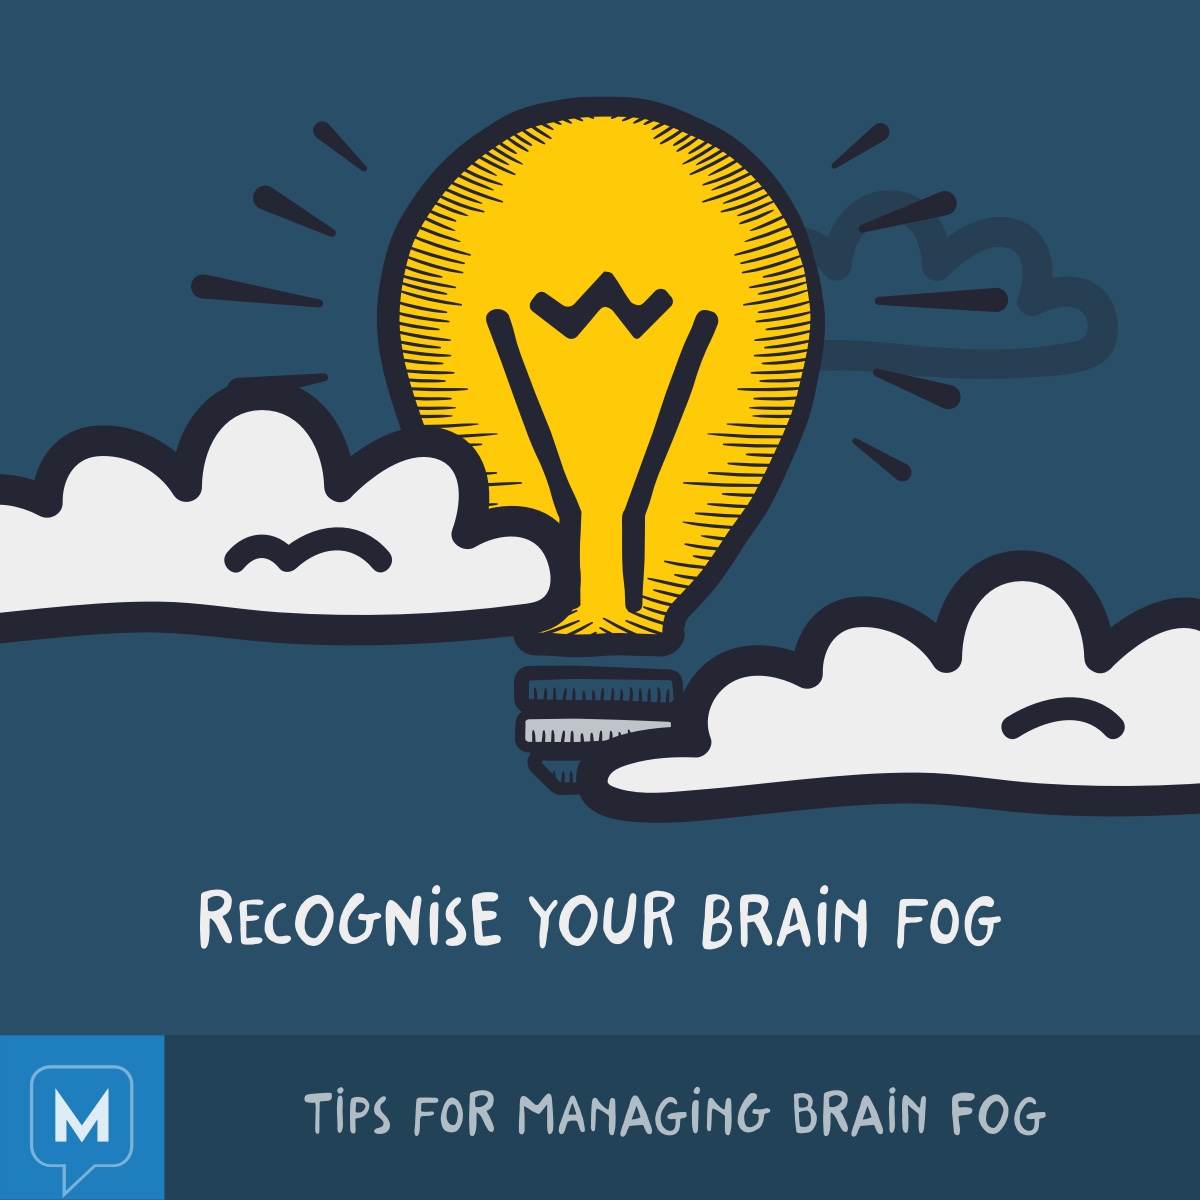 Recognize your brain fog